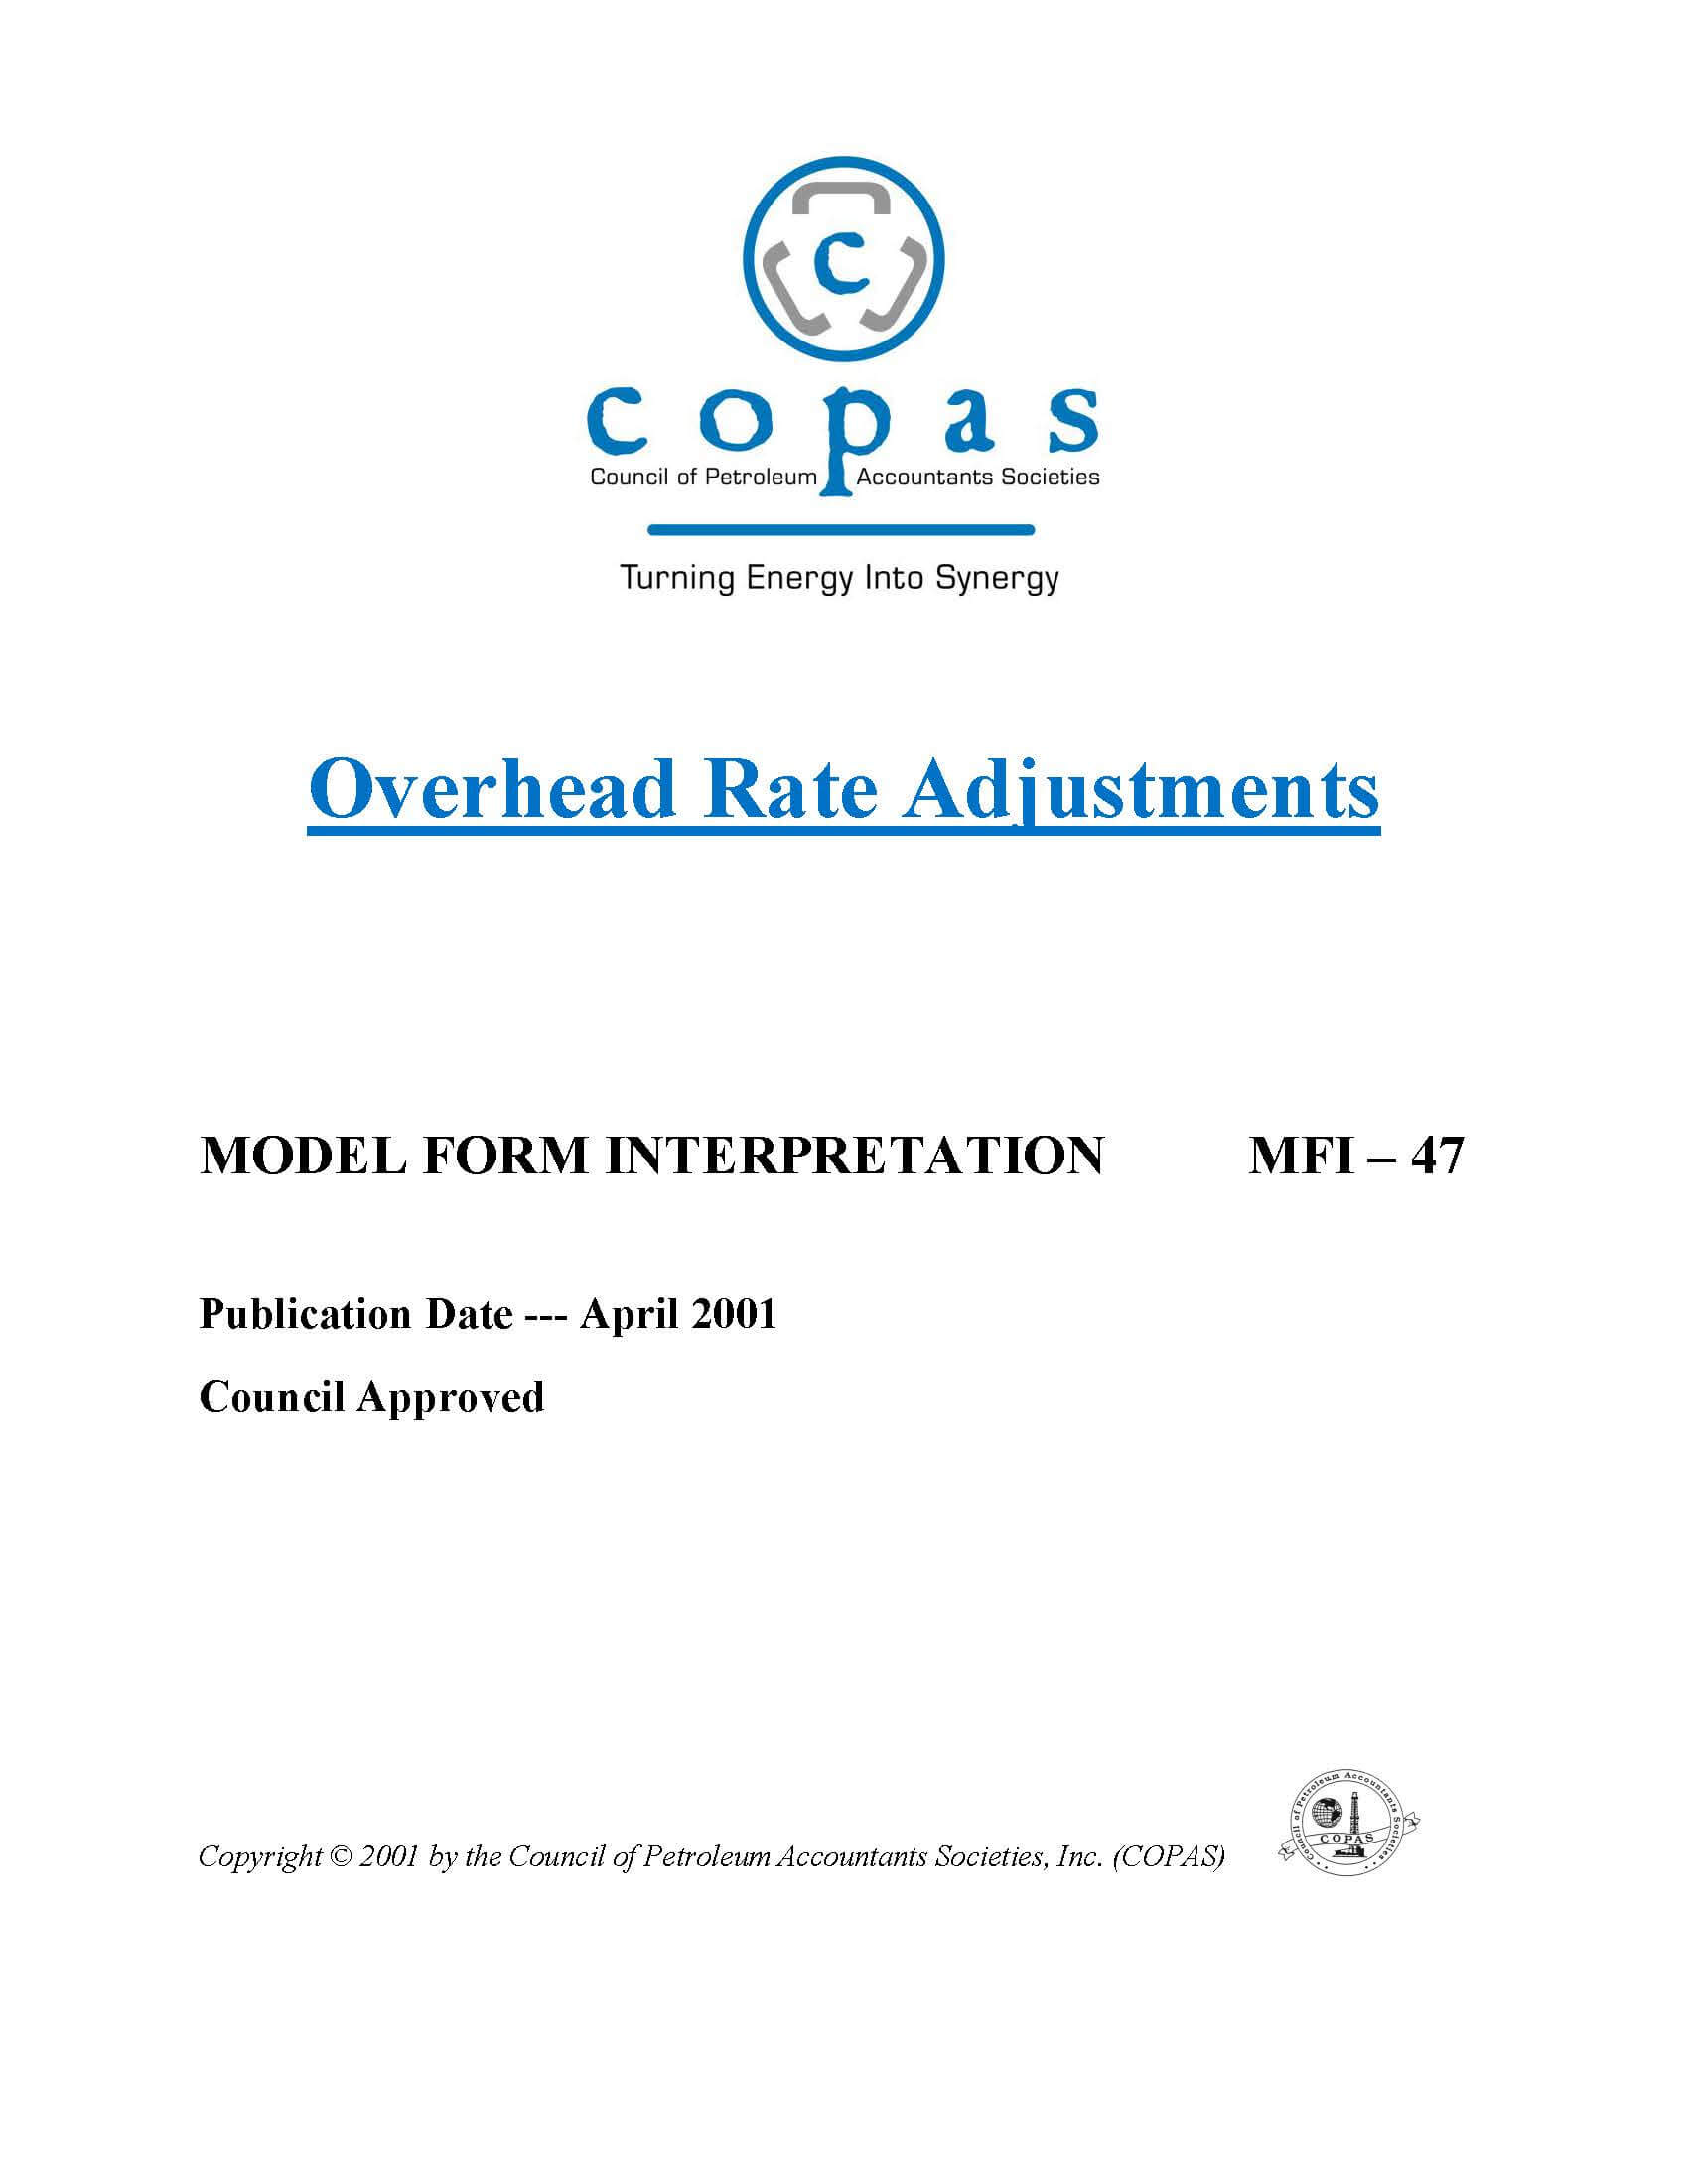 MFI-47 Overhead Rate Adjustments